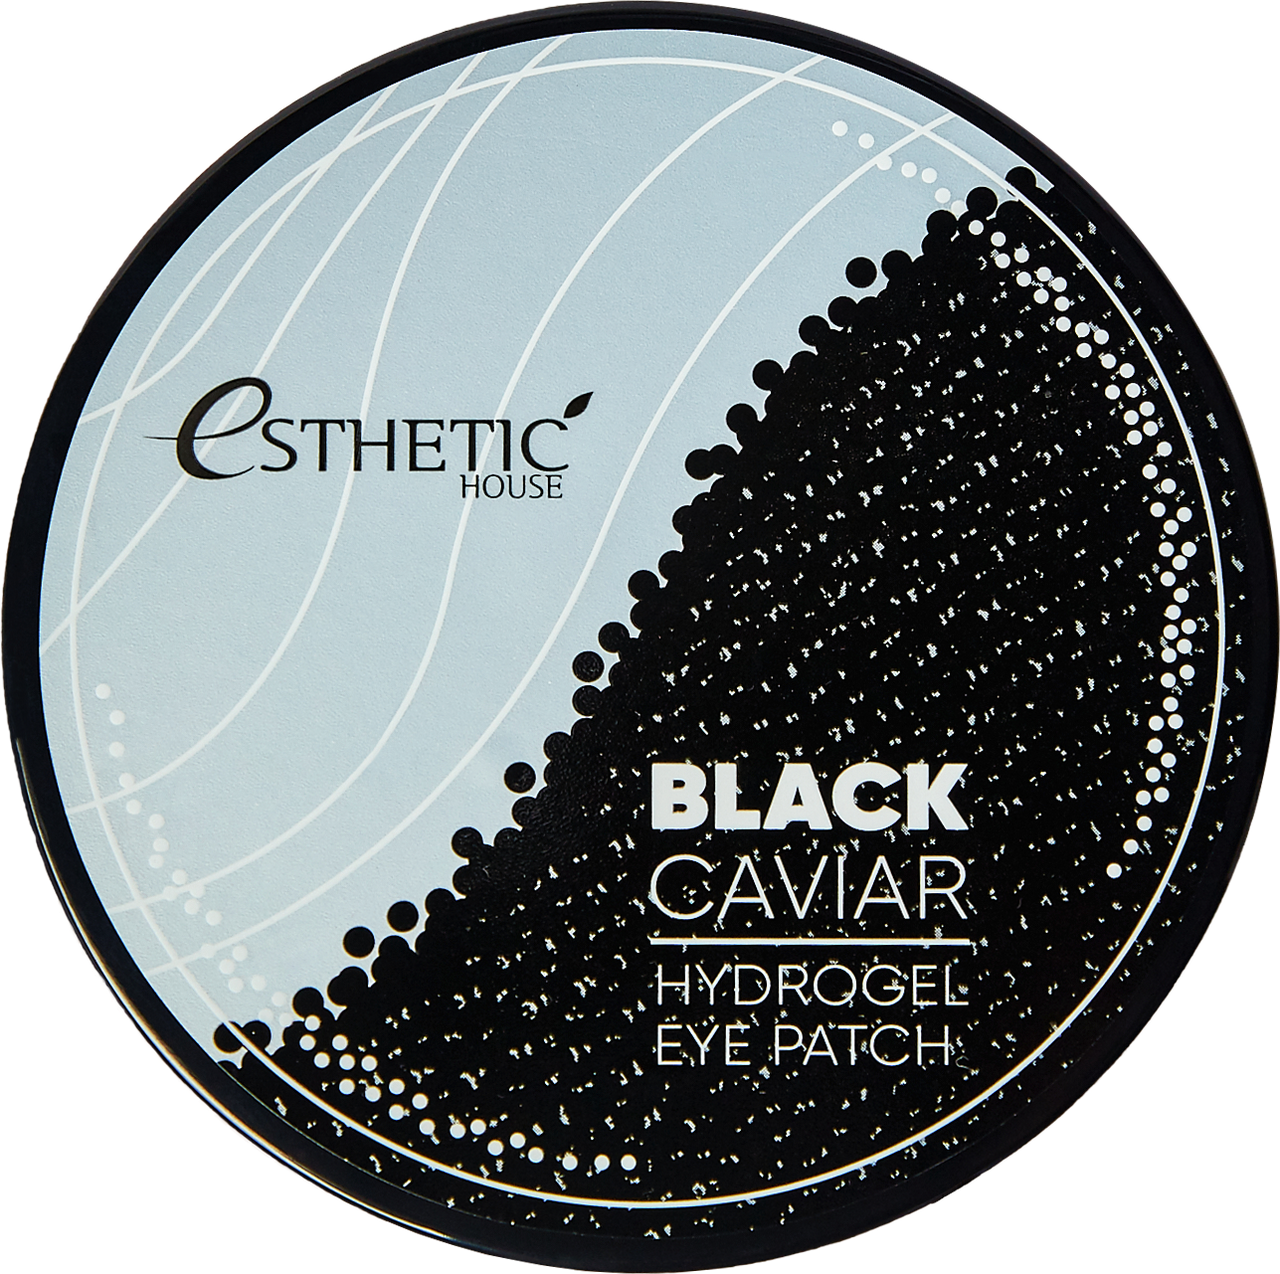 Патчи для глаз ЧЕРНАЯ ИКРА Black Caviar Hydrogel Eye Patch, 60 шт (Esthetic House)